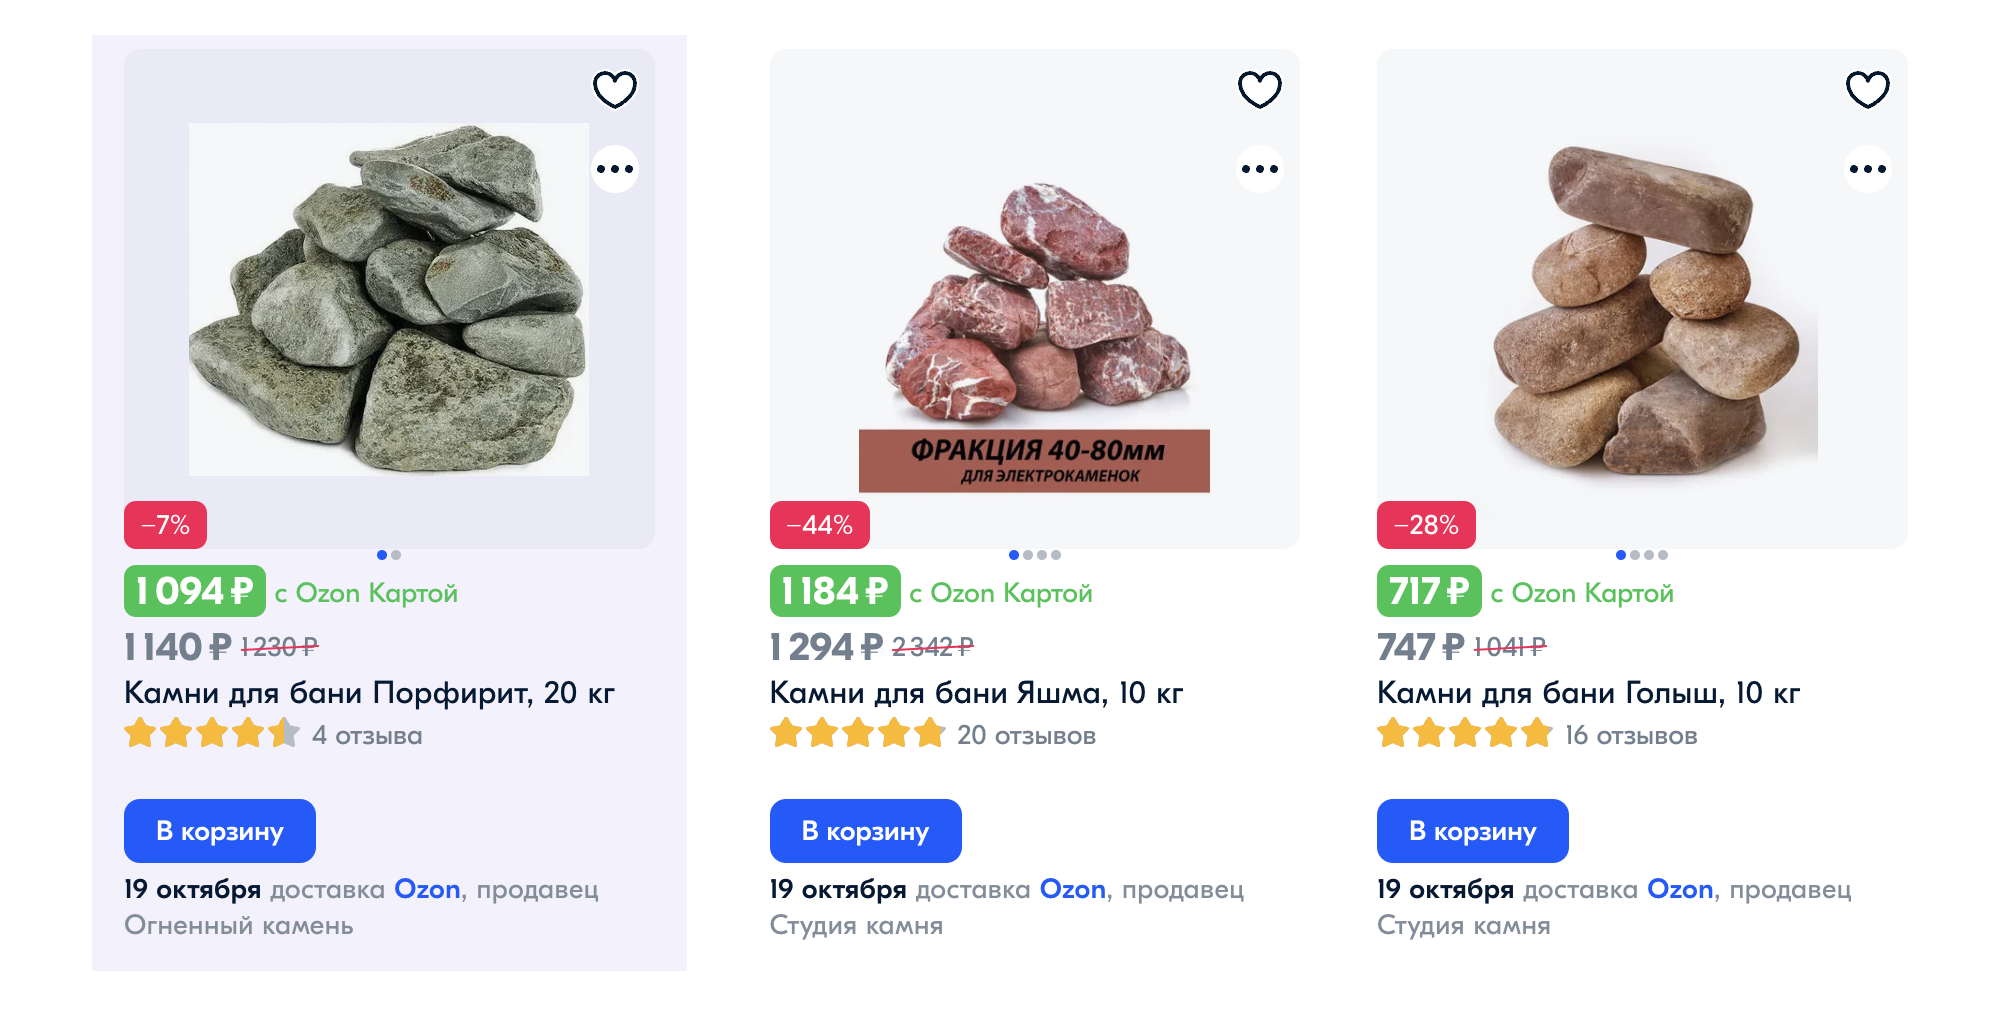 Камни для бани могут выйти дороже самой печи. Источник: ozon.ru